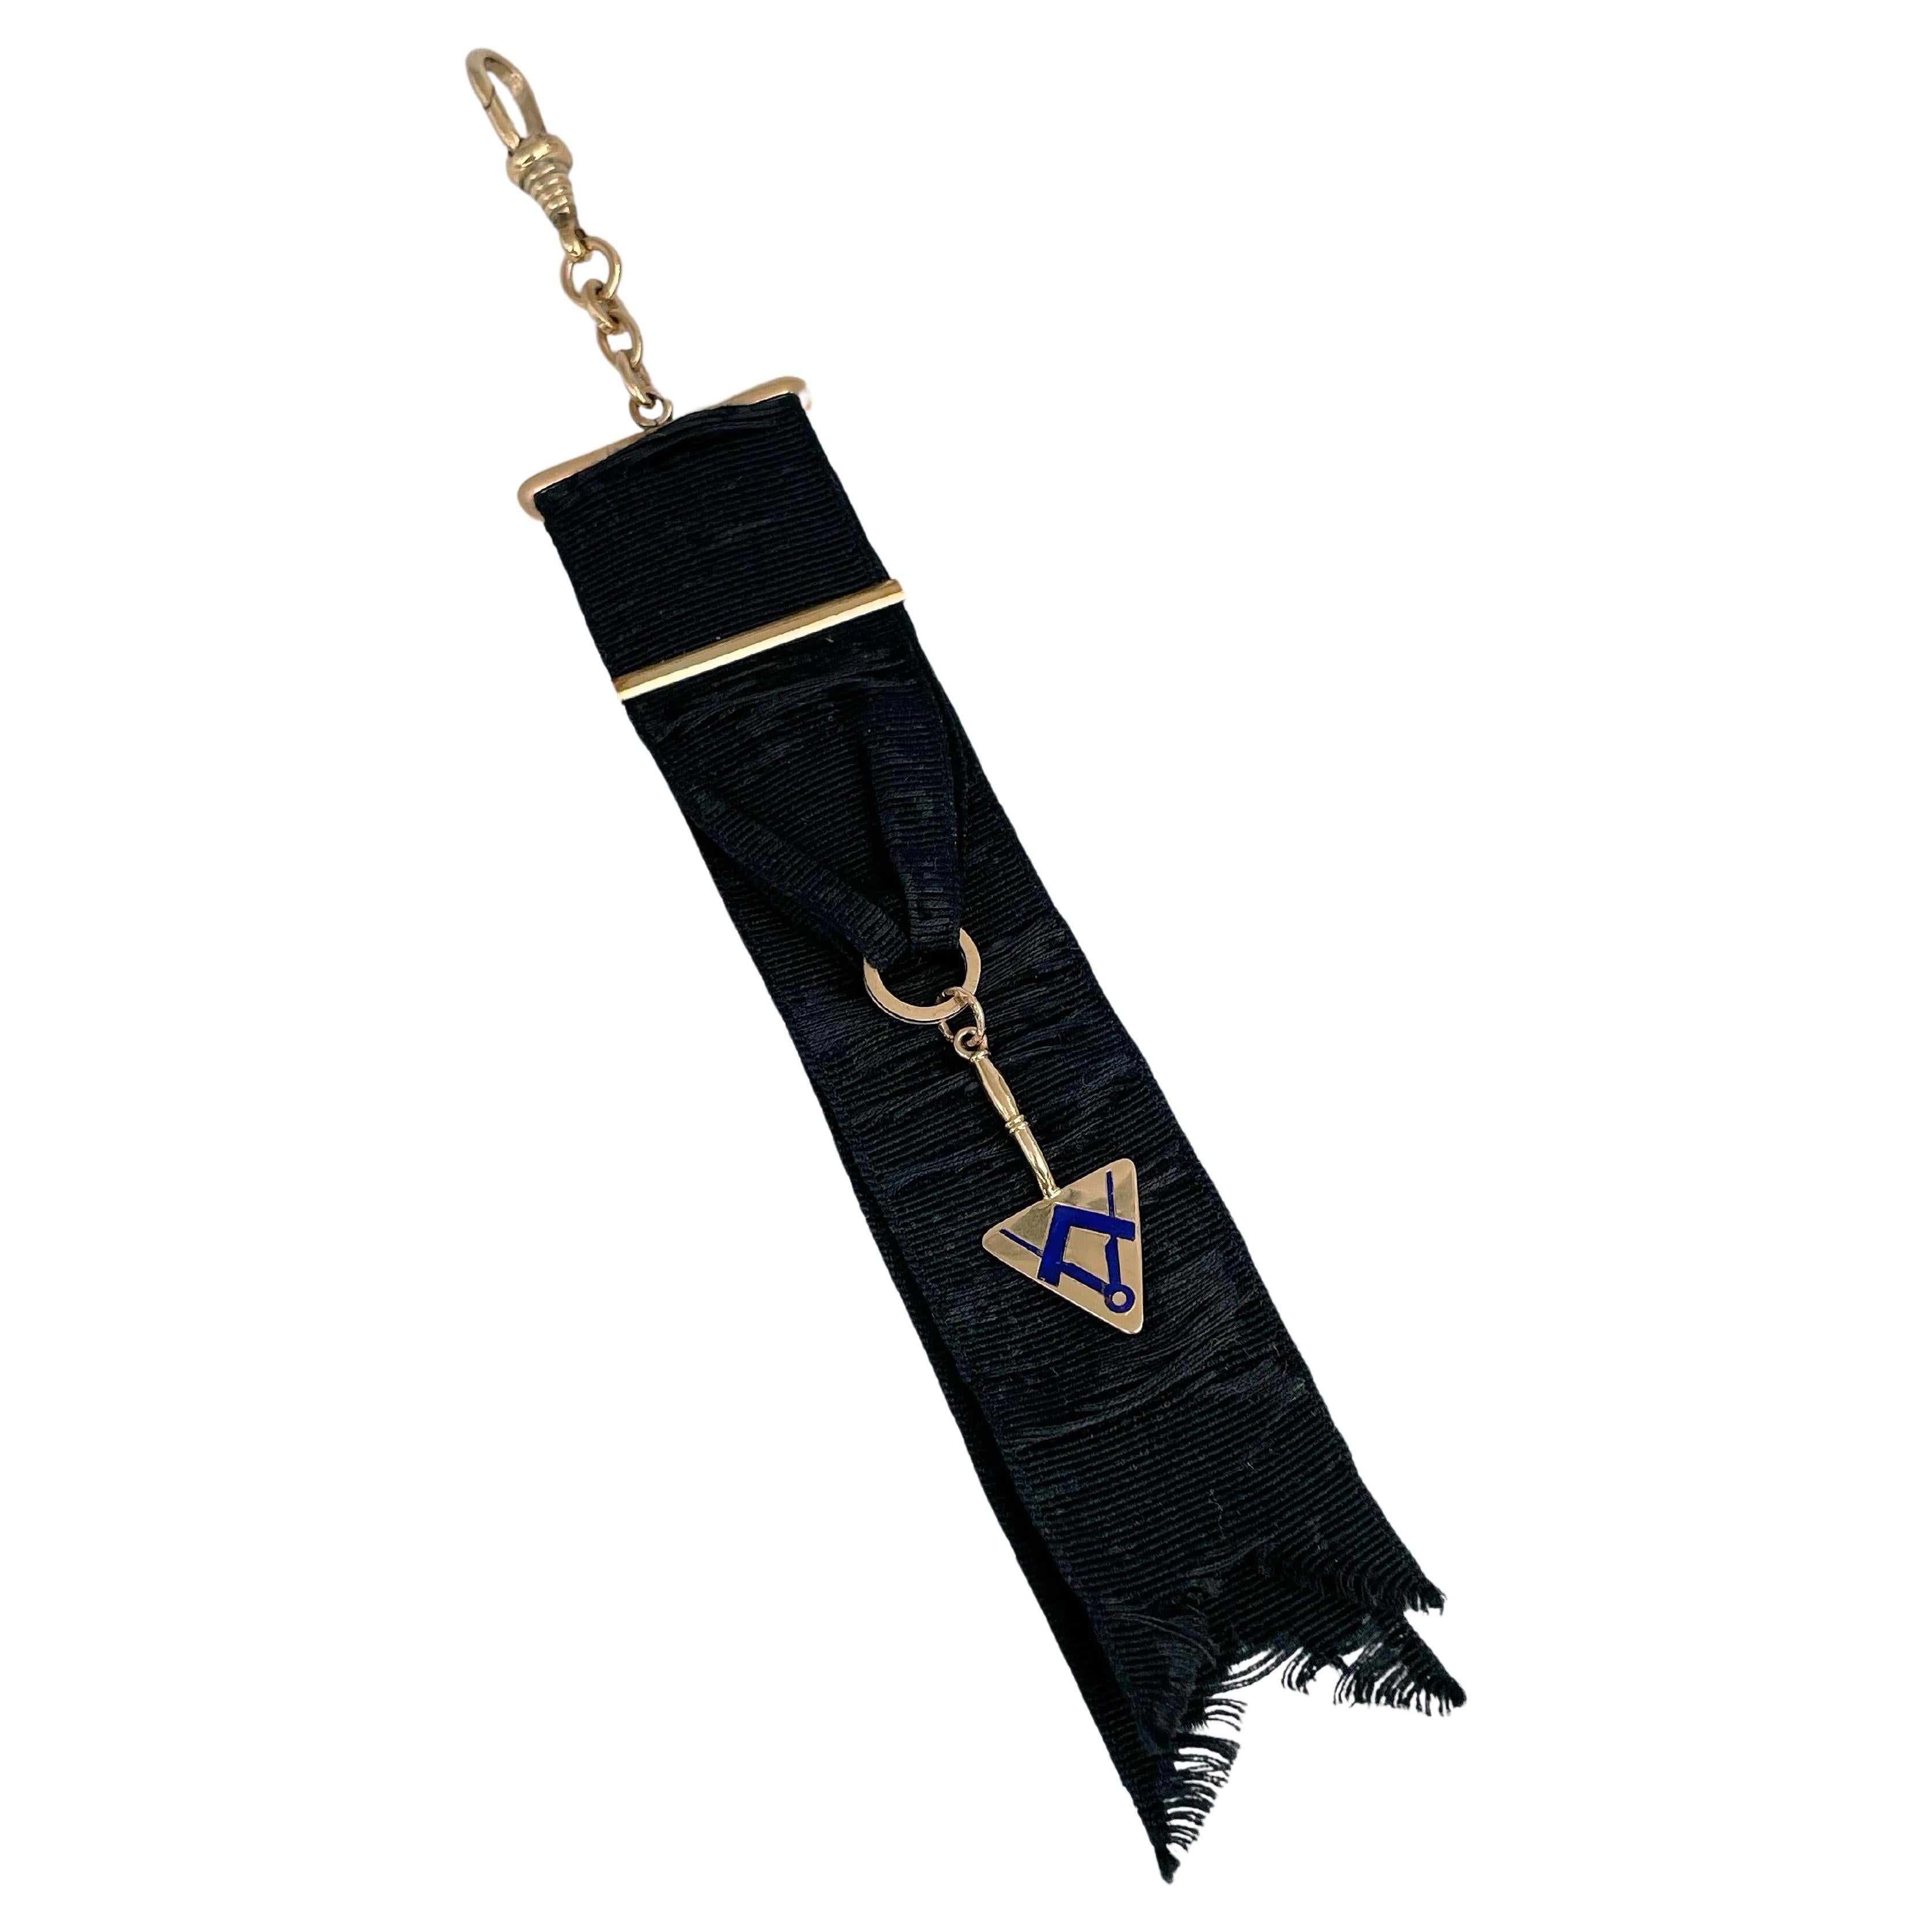 Masonic 18 Karat Gold Trowel Square Compasses Enamel Black Ribbon Fob Pendant